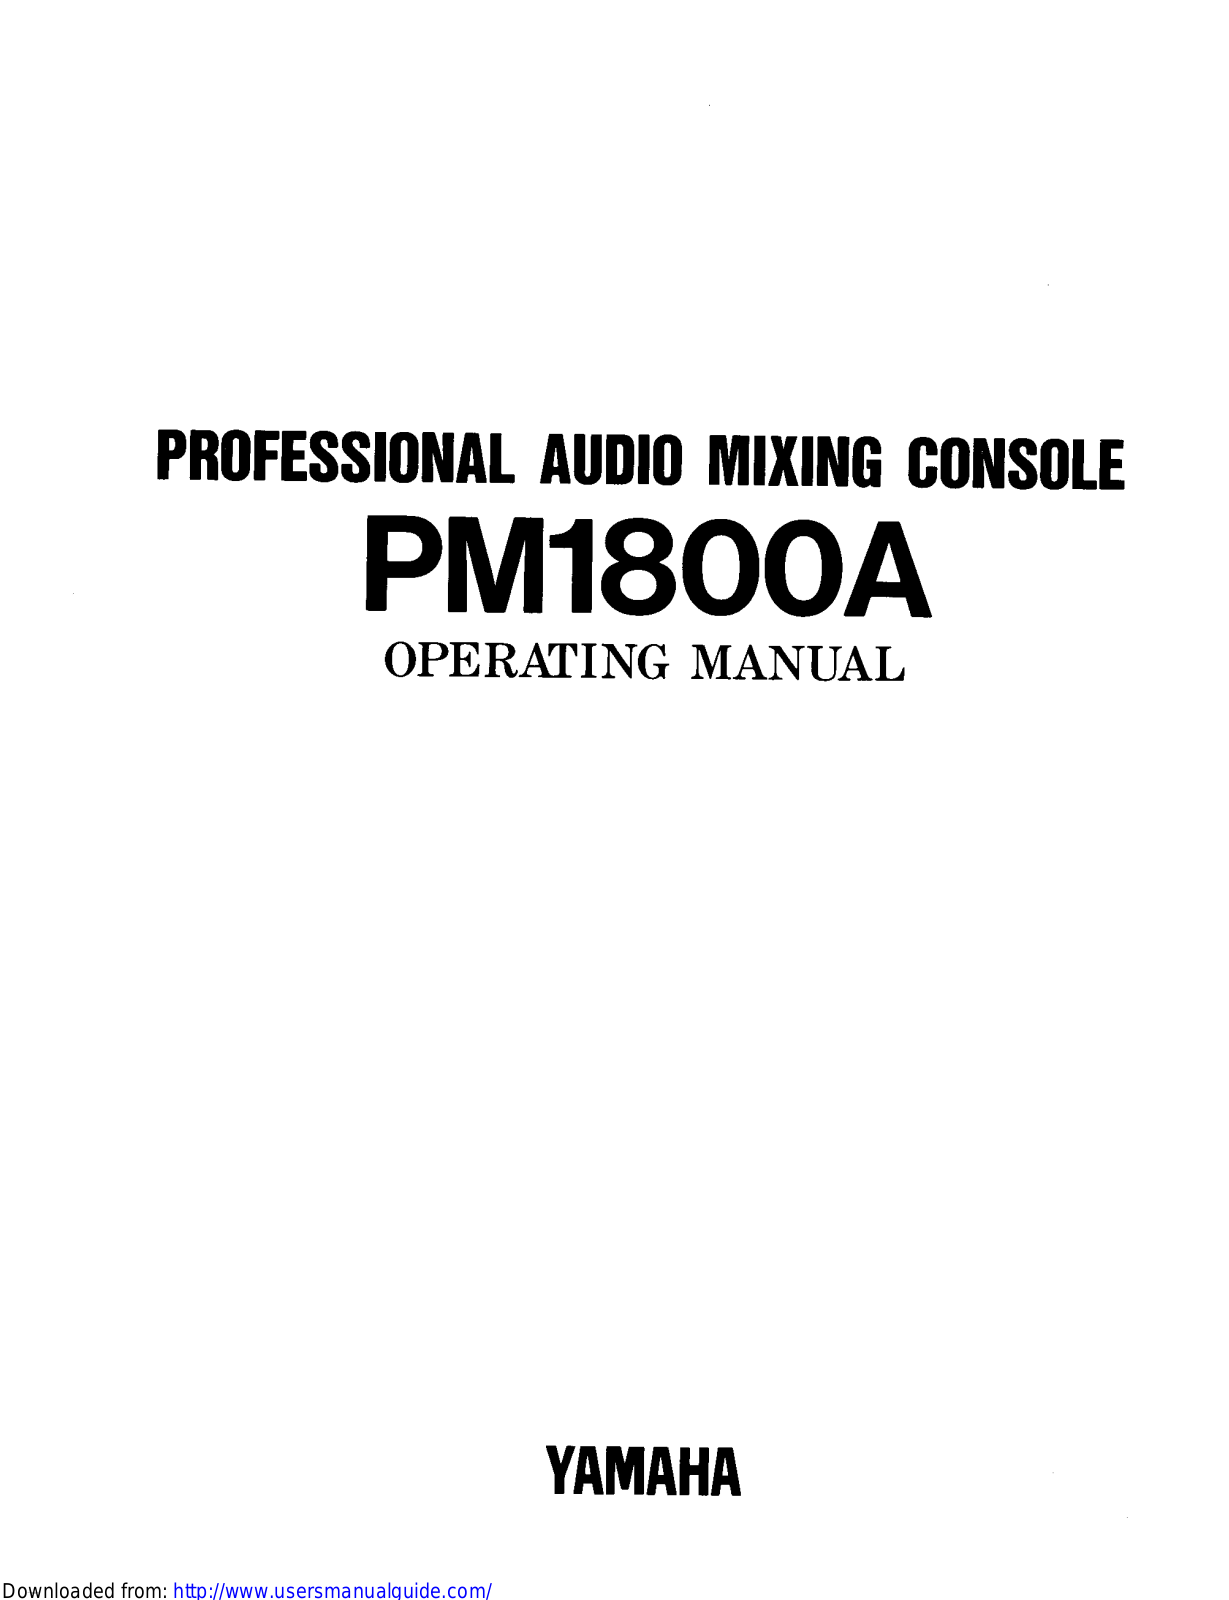 Yamaha Audio PM1800A User Manual